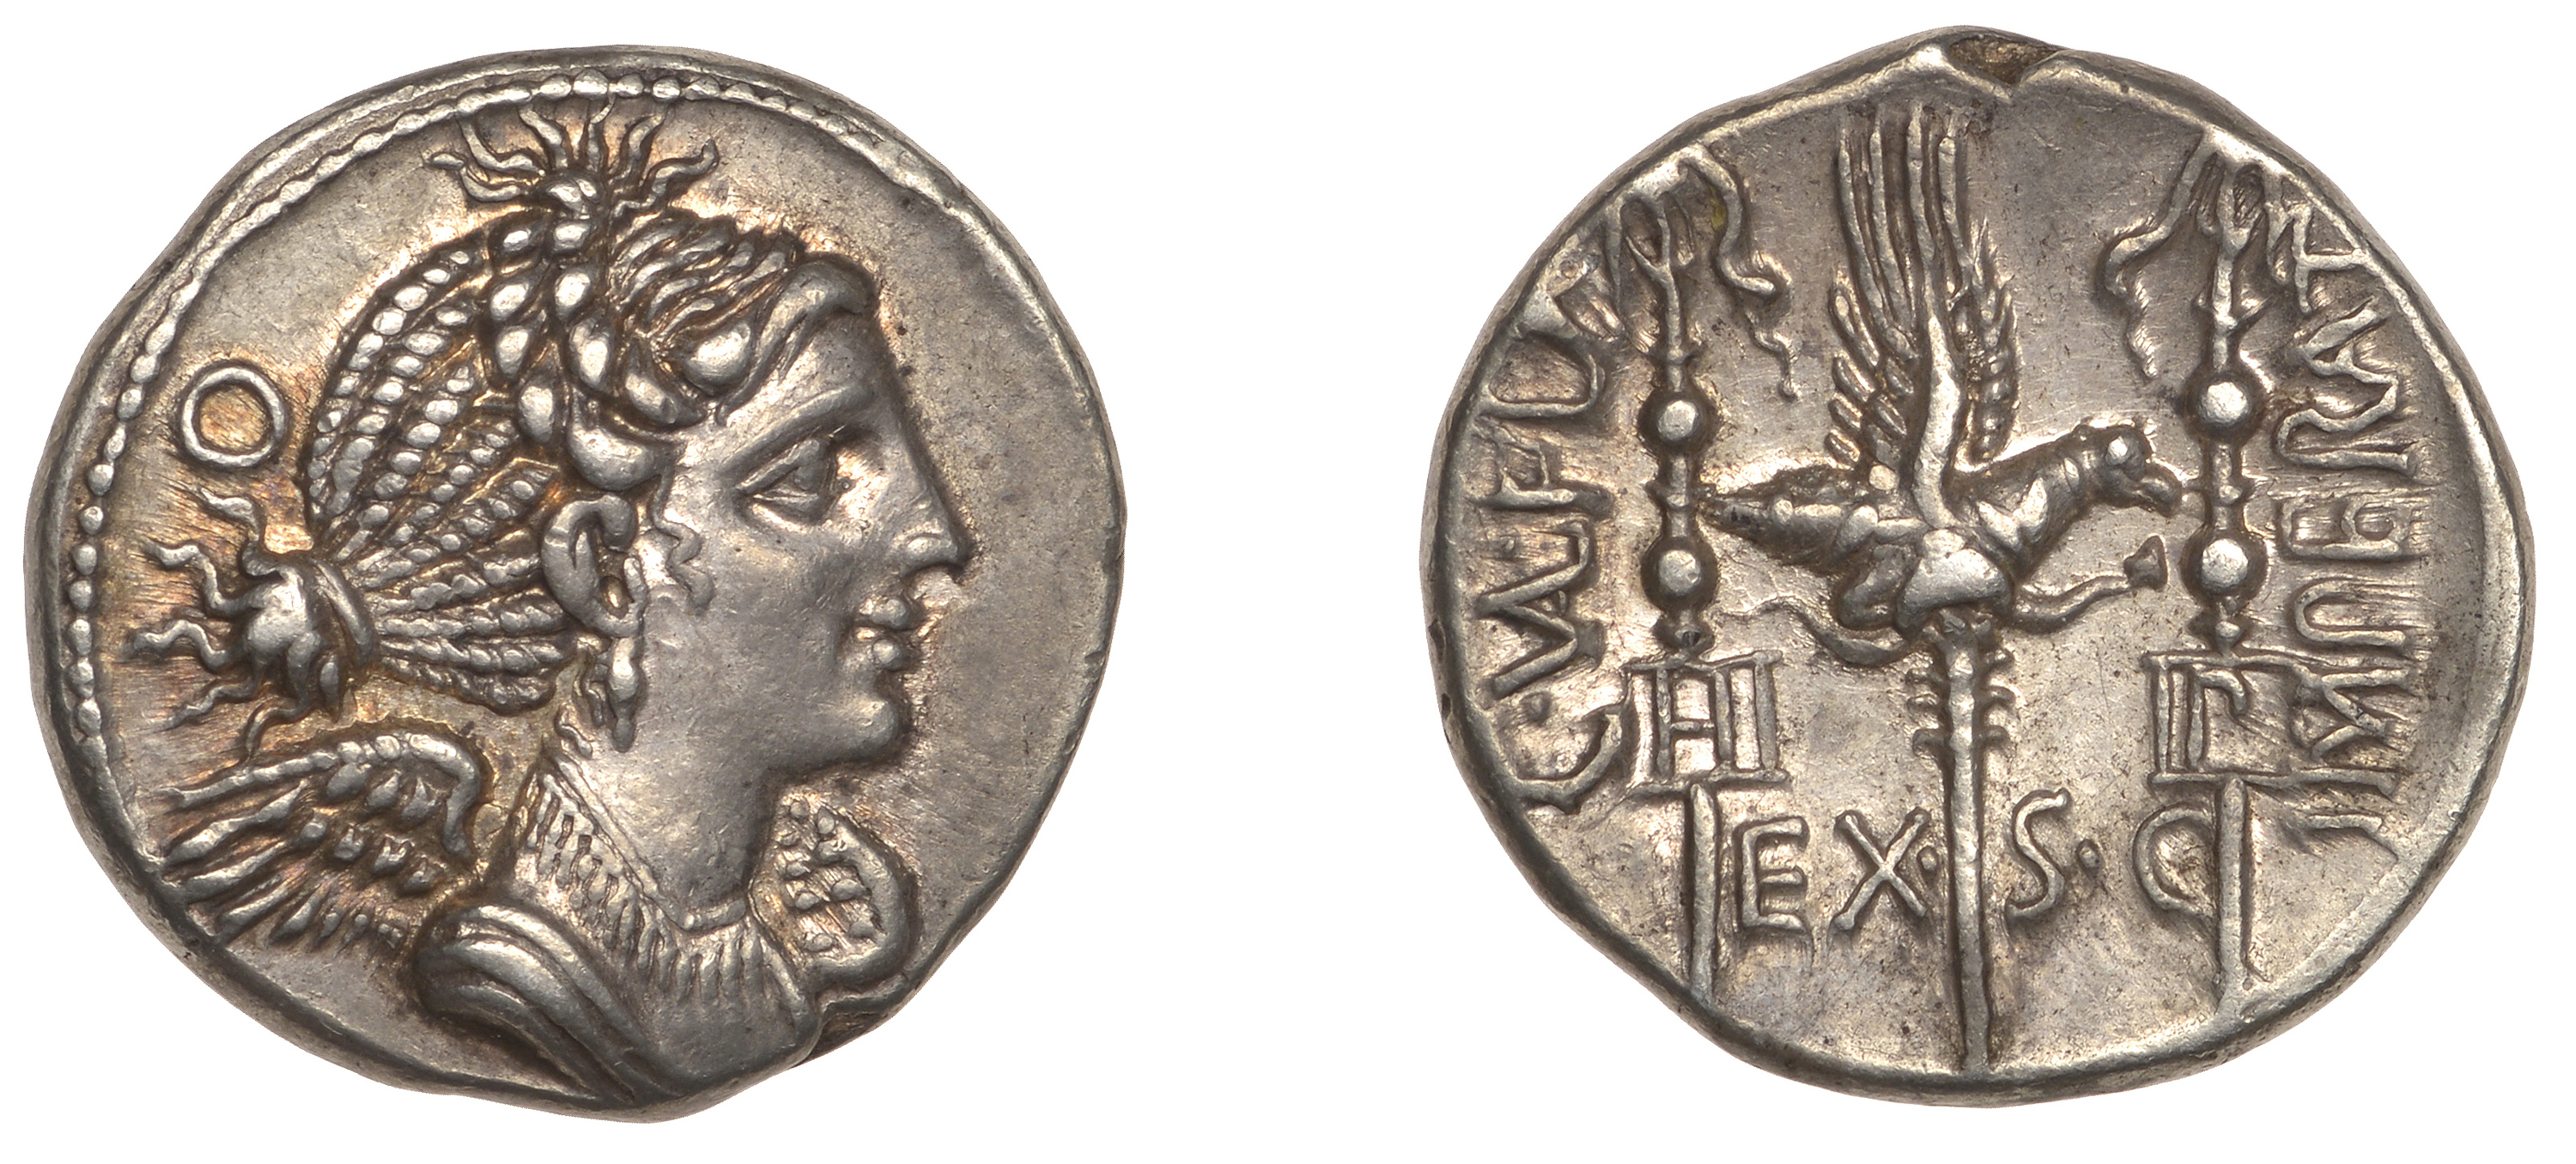 Roman Republican Coinage, C. Valerius Flaccus, Denarius, c. 82, Massalia, draped bust of Vic...